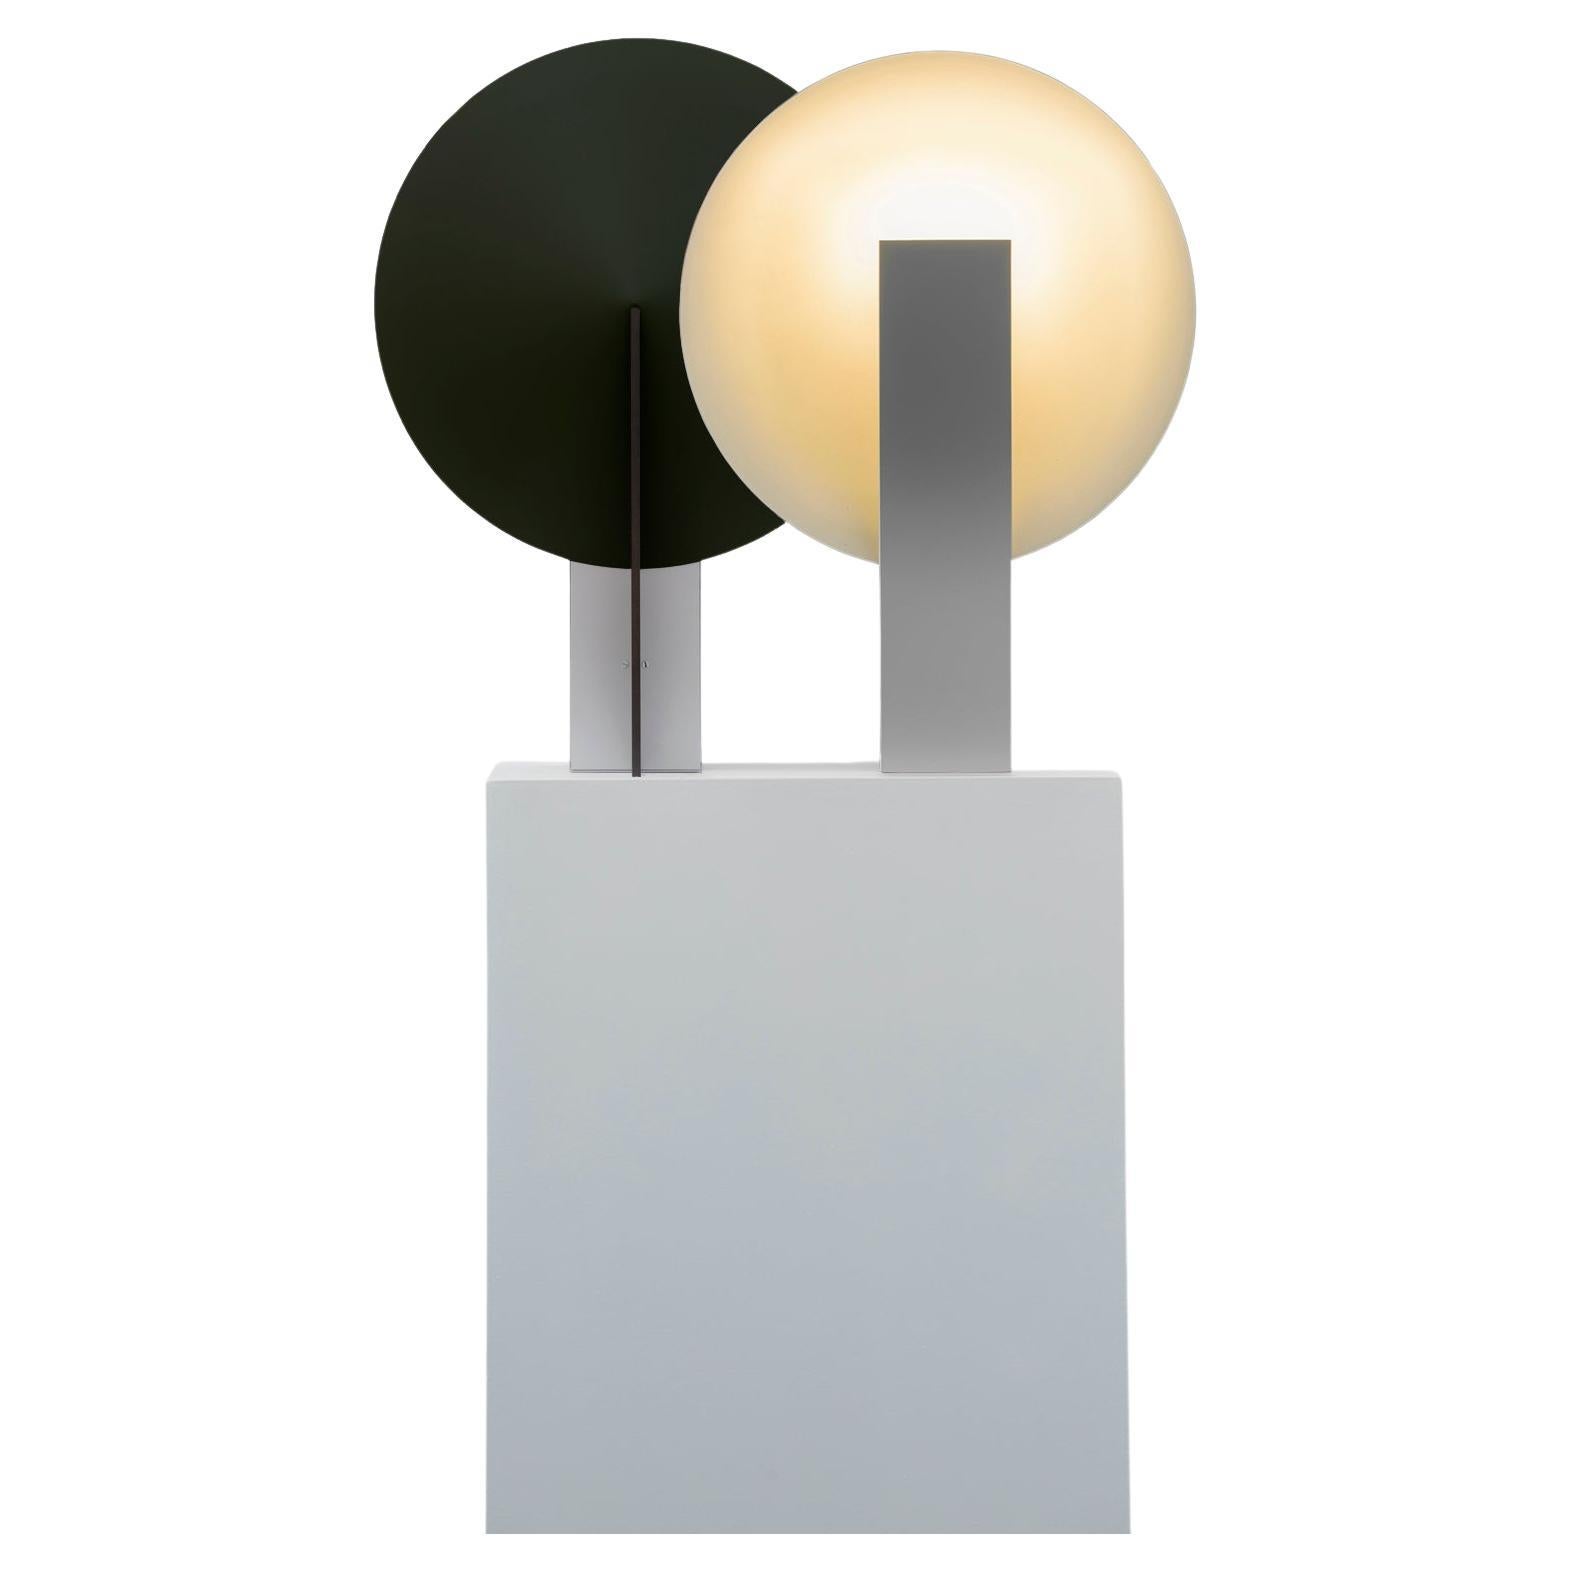 ORBE est une lampe de table à lumière indirecte, conçue pour fournir un éclairage doux à l'environnement.

La pièce a une structure simple, composée du minimum requis pour sa fonctionnalité : la boîte frontale abrite la source lumineuse et fournit